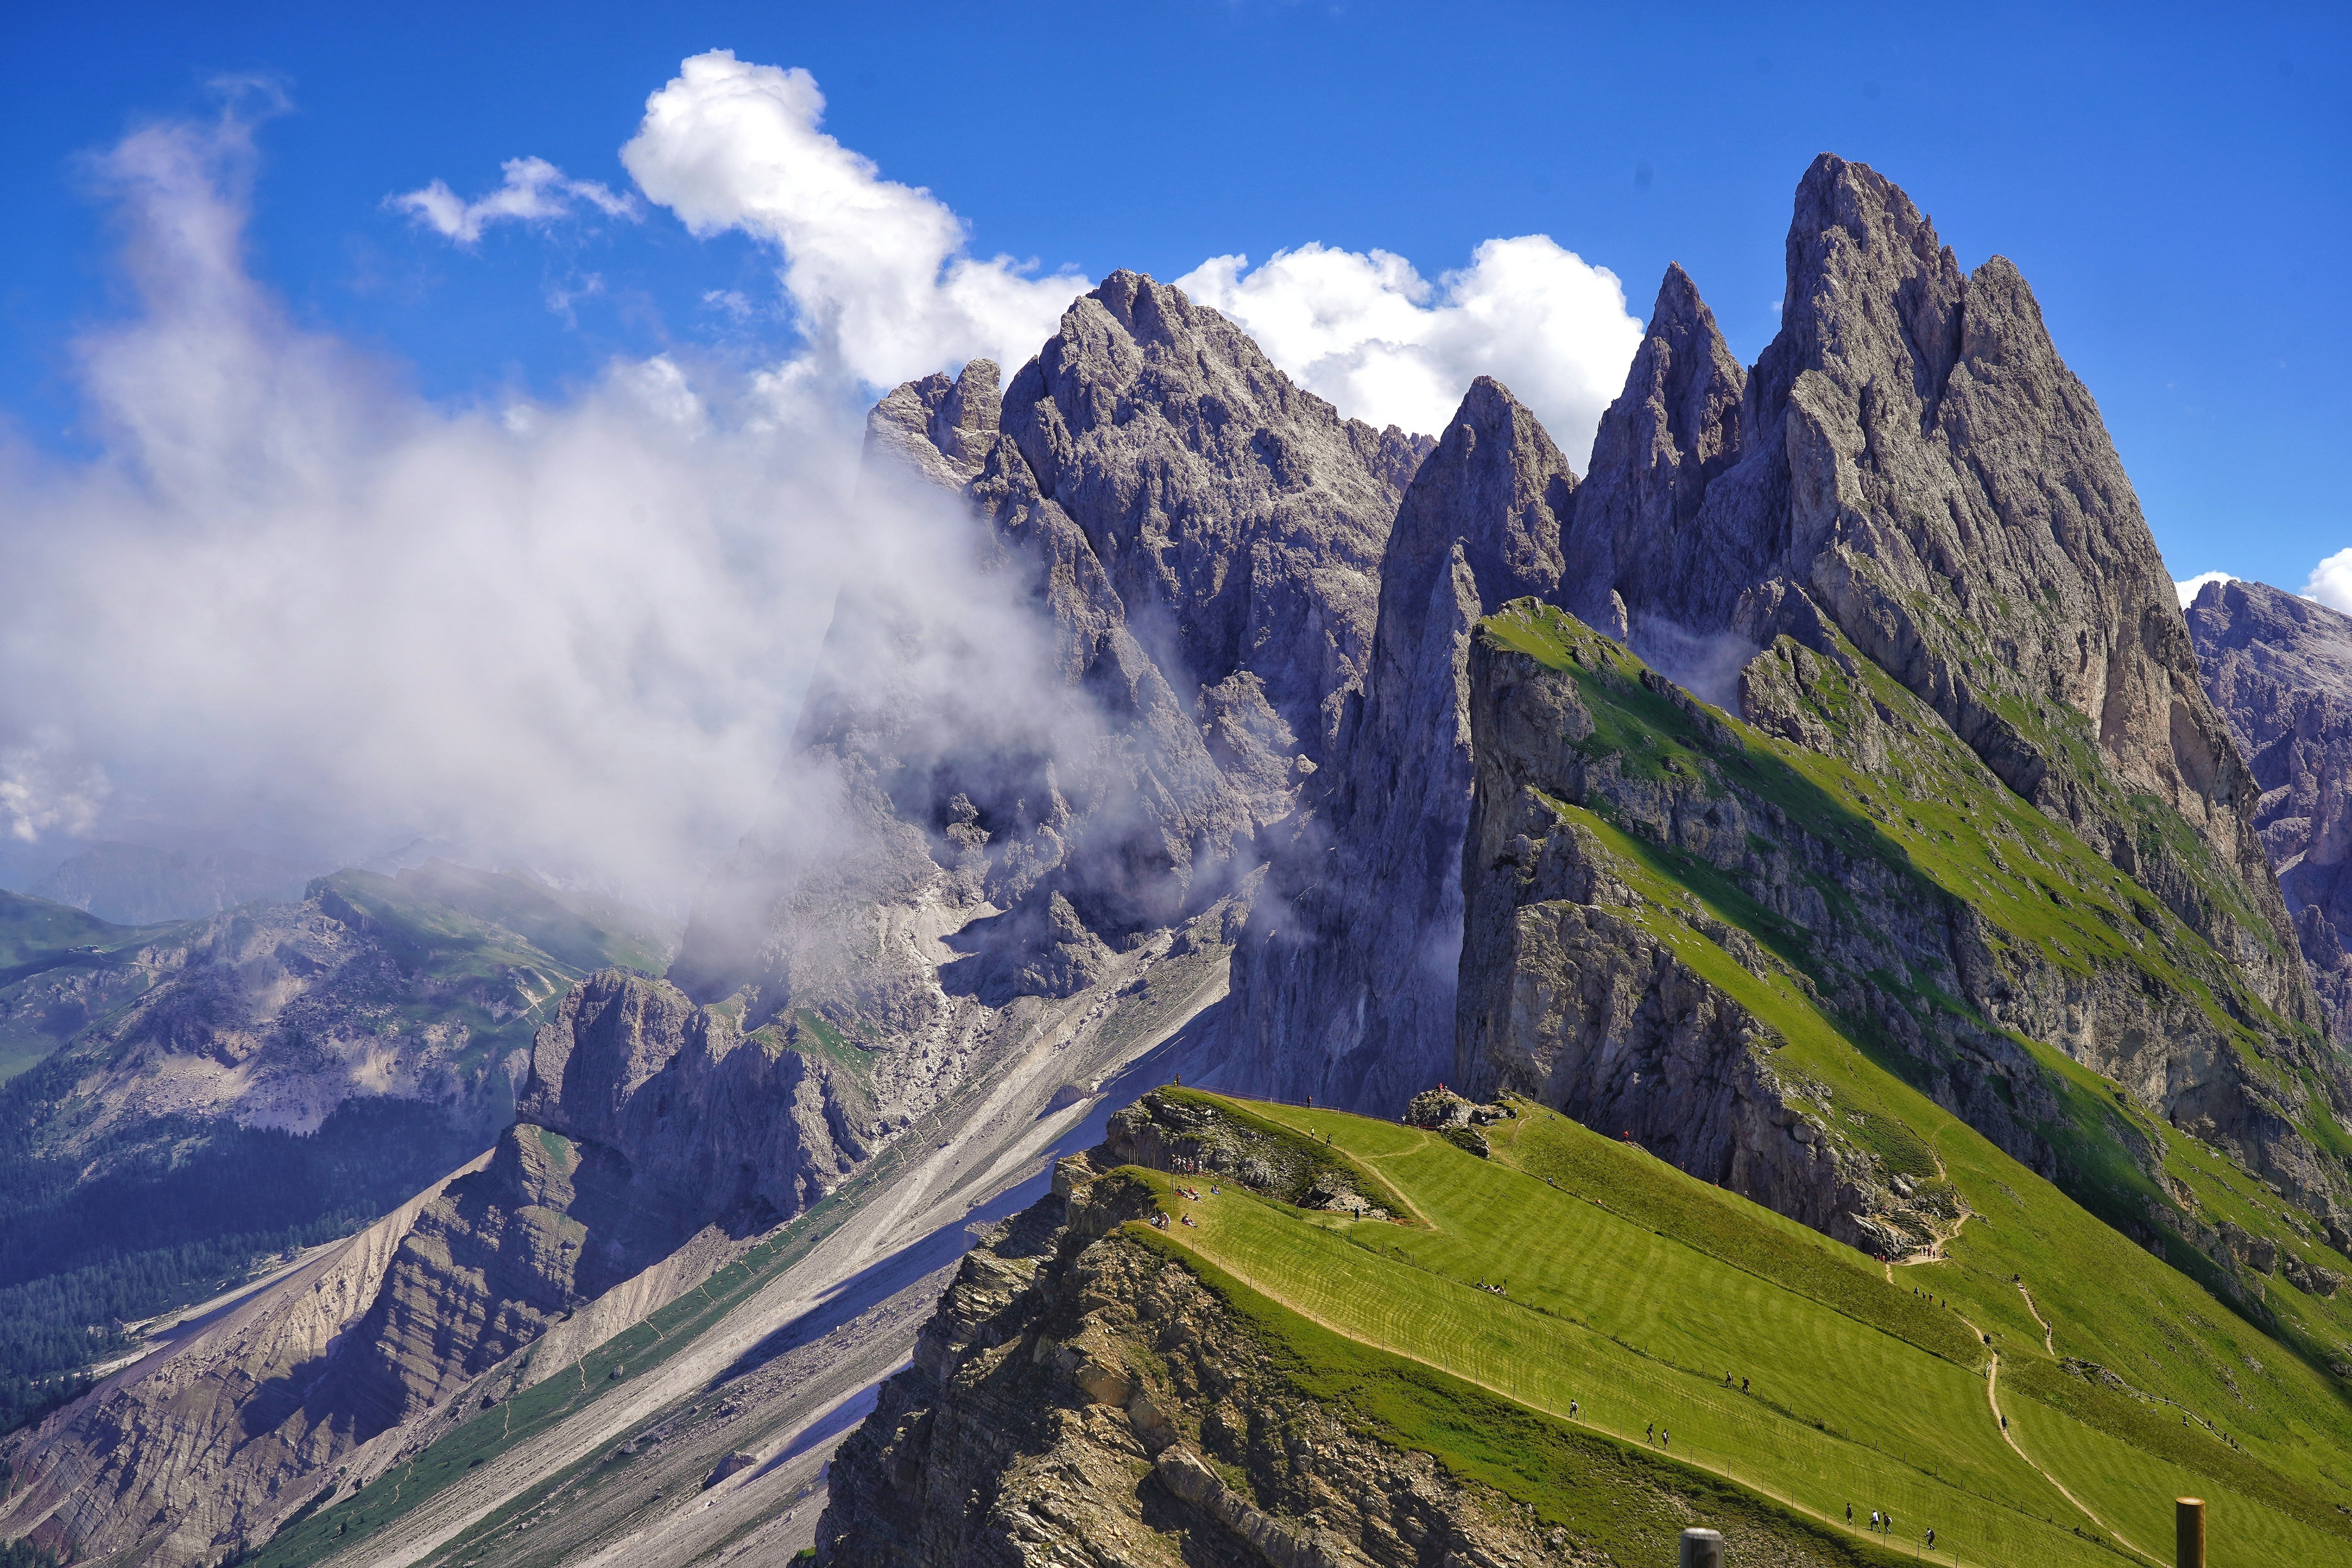 Фото облака итальянская скала пейзажи - бесплатные картинки на Fonwall